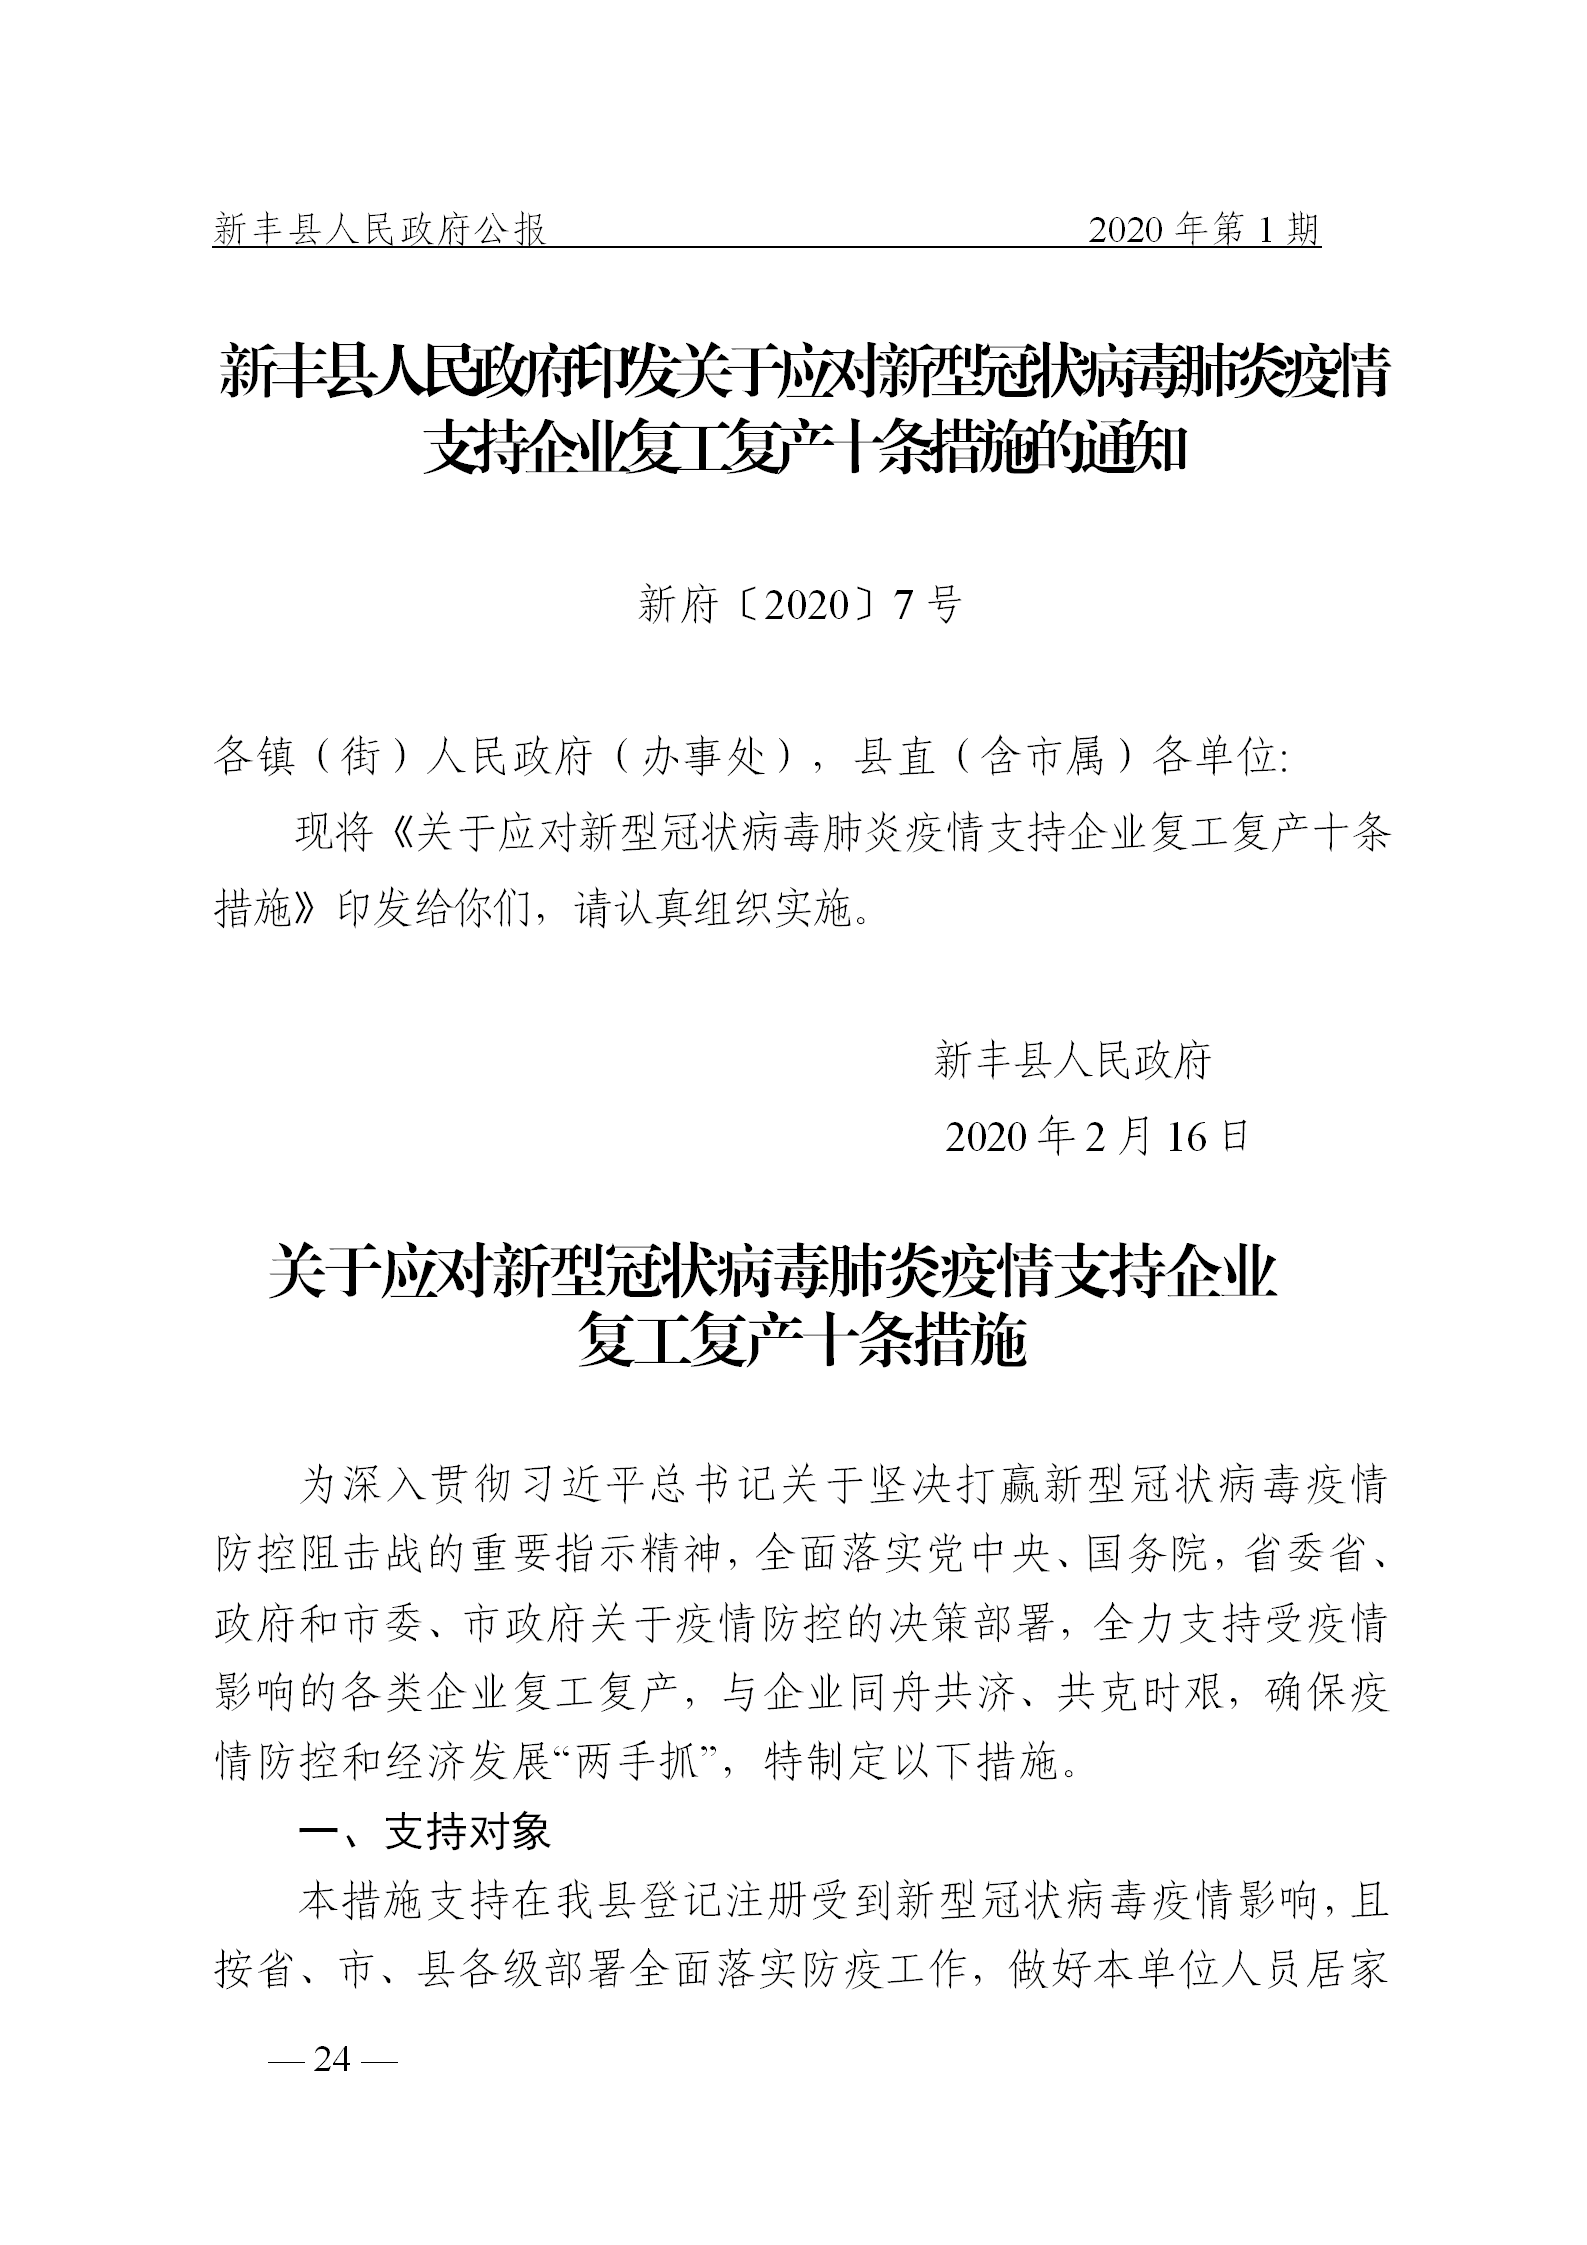 《新丰县人民政府公报》2020年第1期(1)_24.png